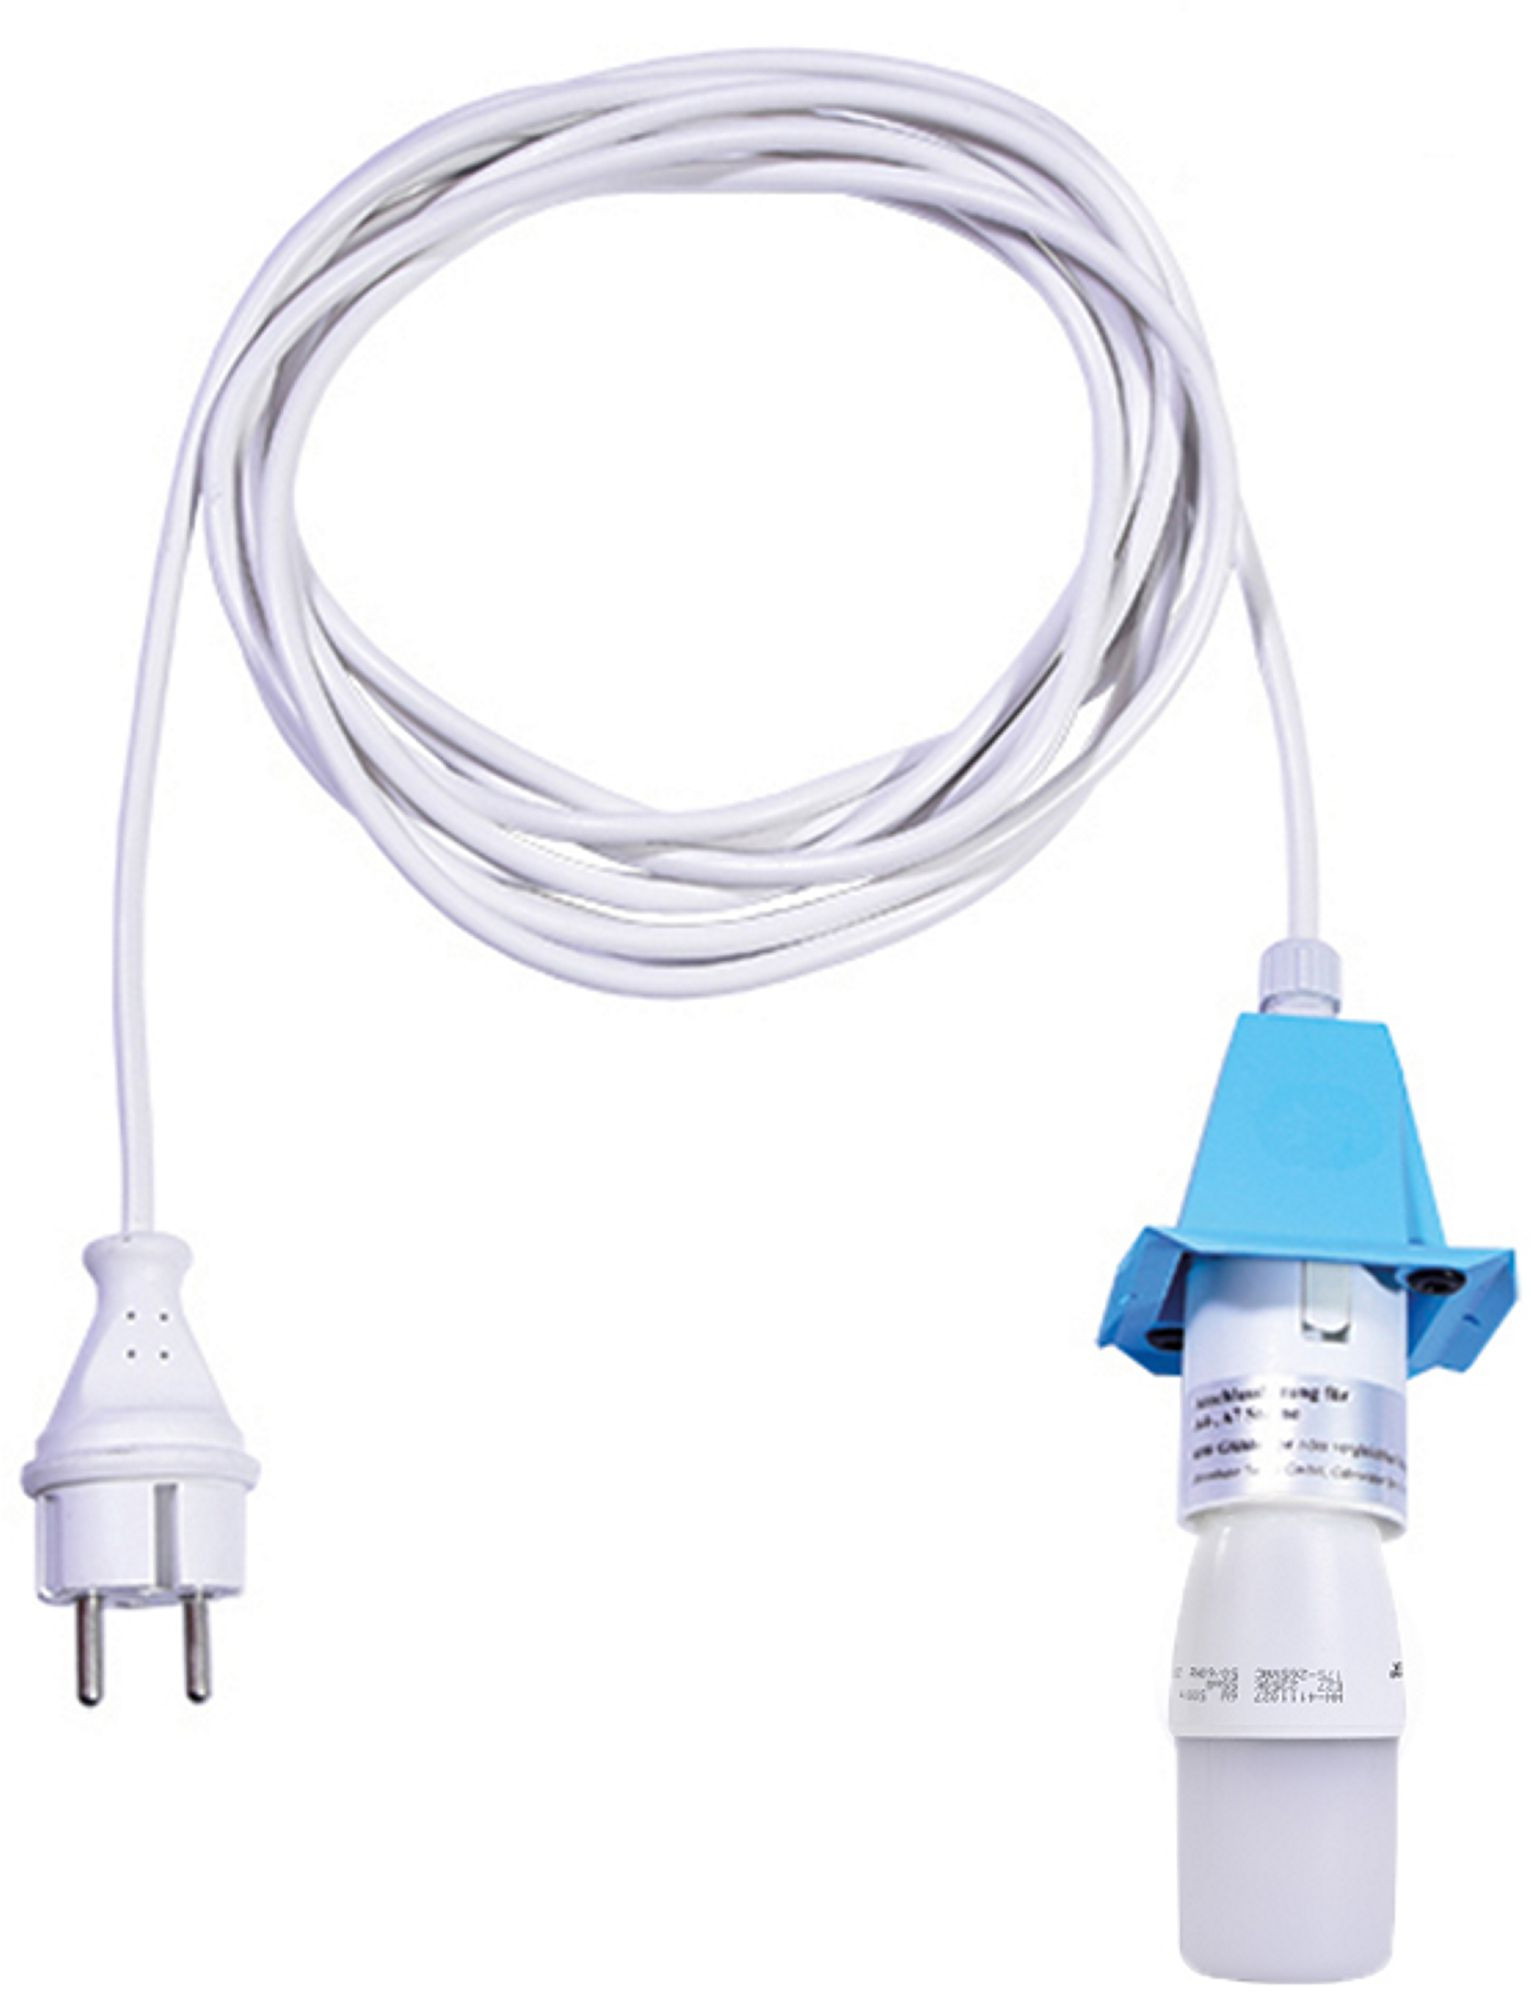 Kabel für A4/A7 - weißes Kabel 5m, Deckel blau